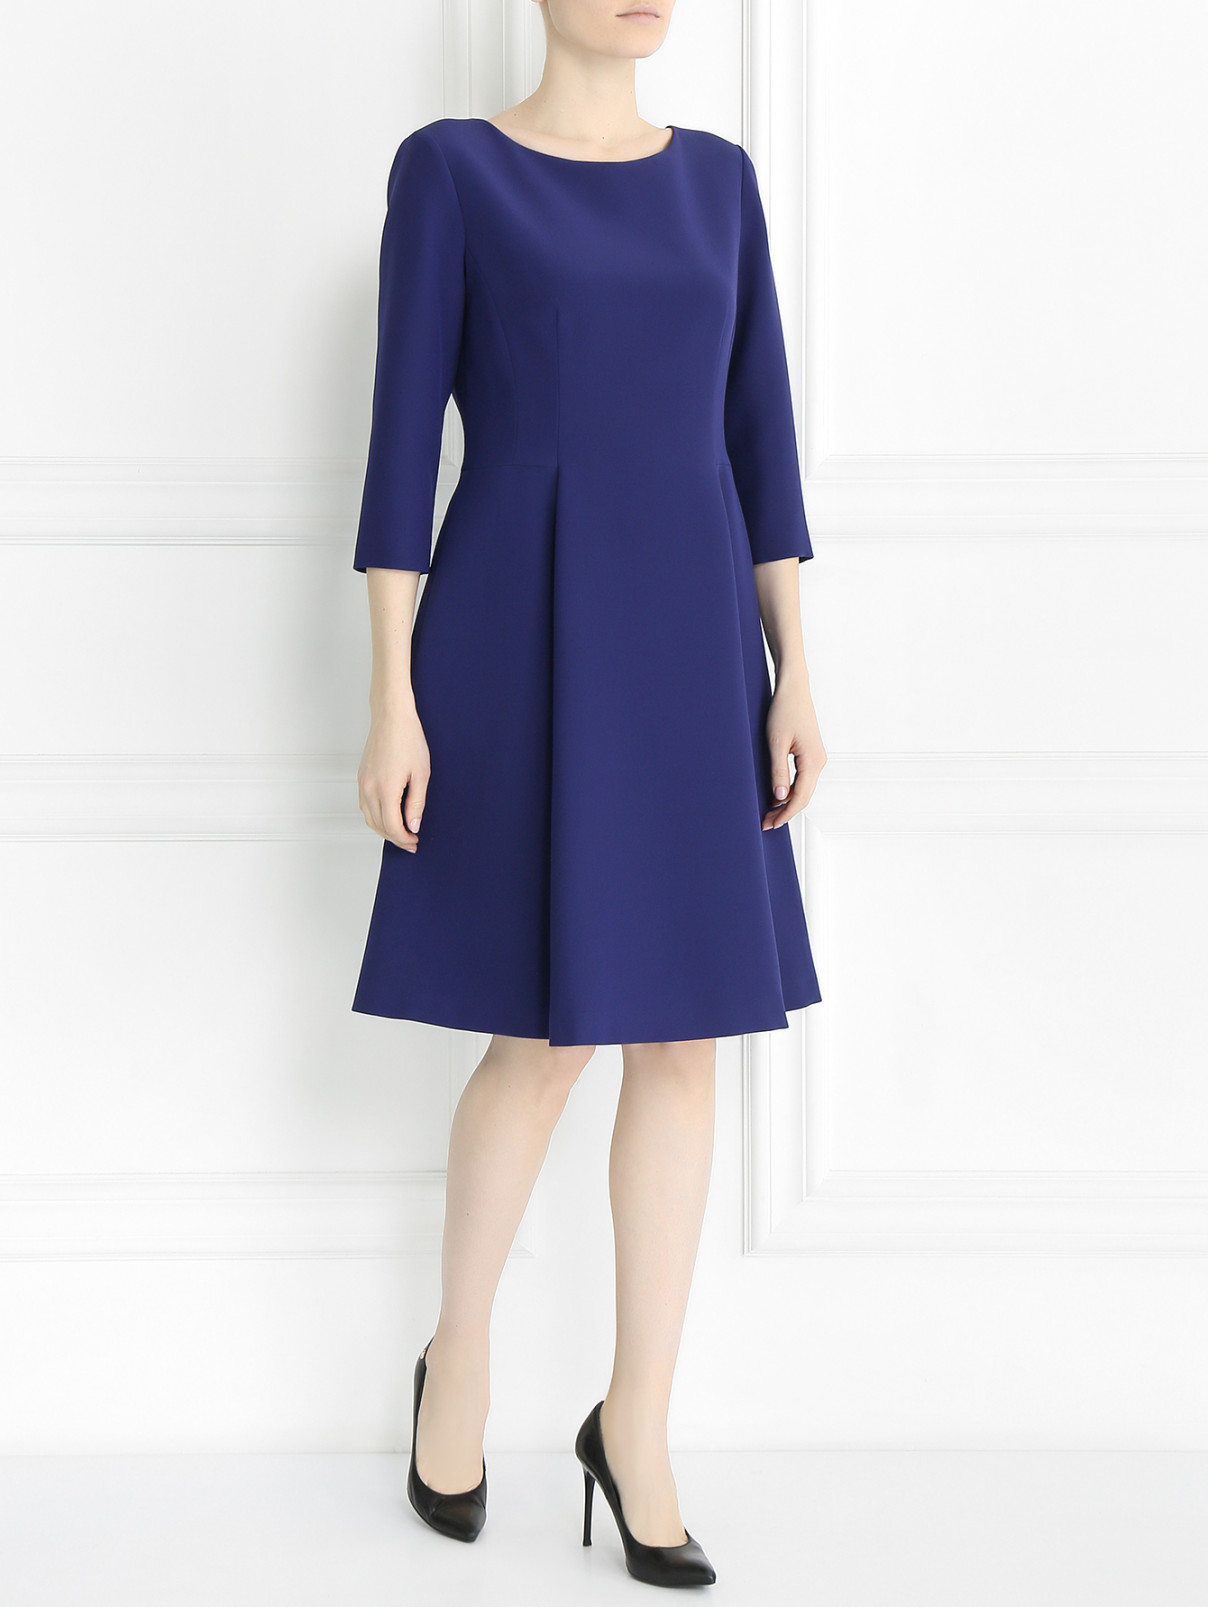 Платье из шелка Alberta Ferretti  –  Модель Общий вид  – Цвет:  Фиолетовый